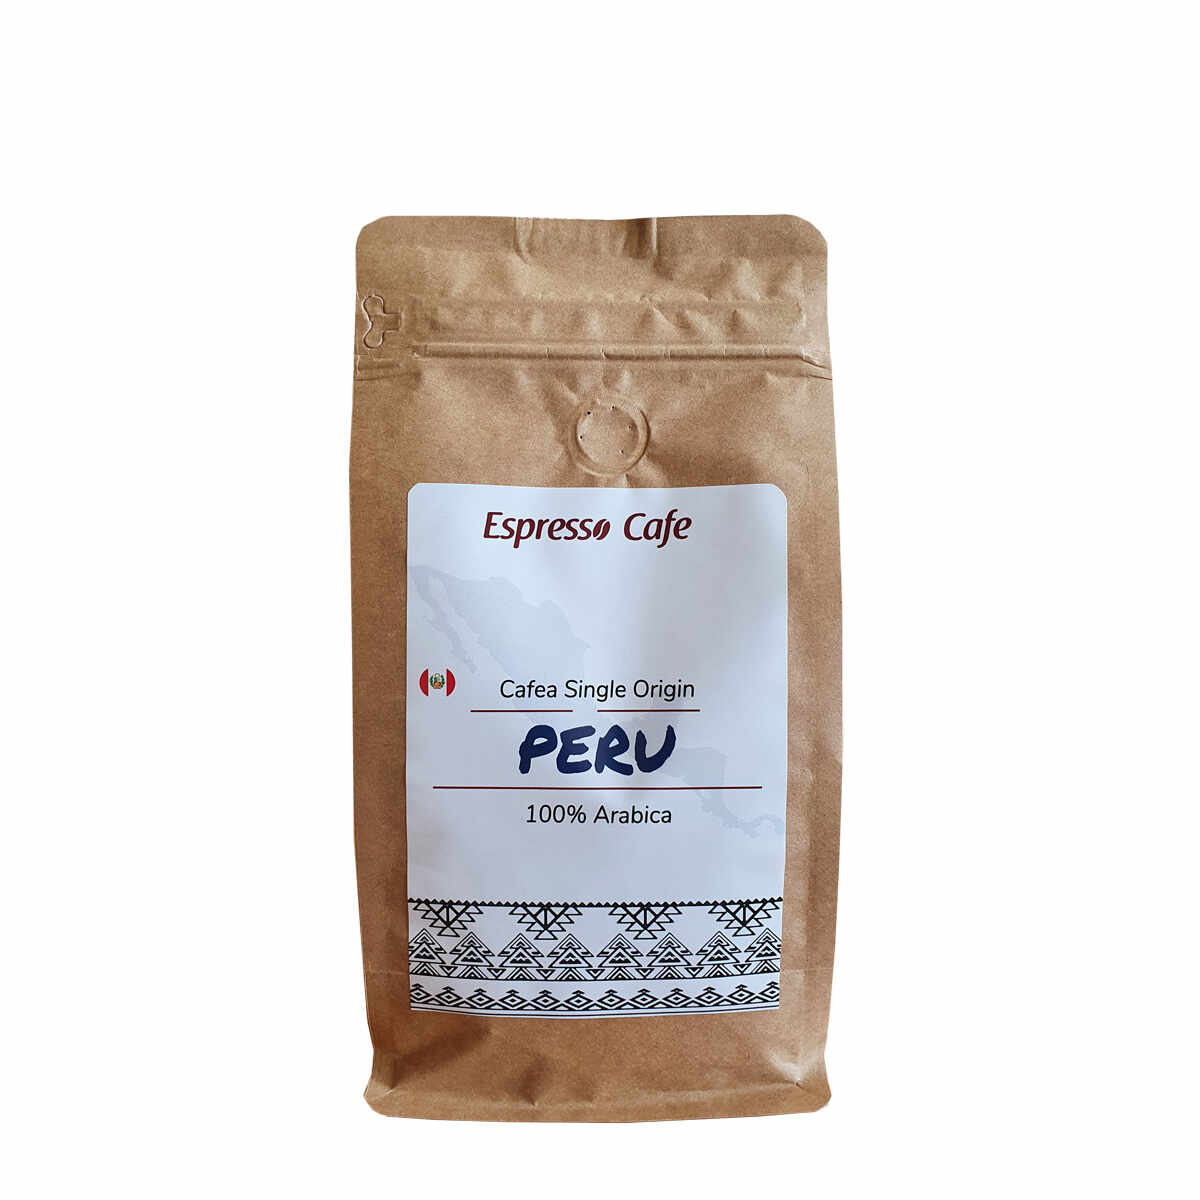 Peru cafea boabe de origine 500g